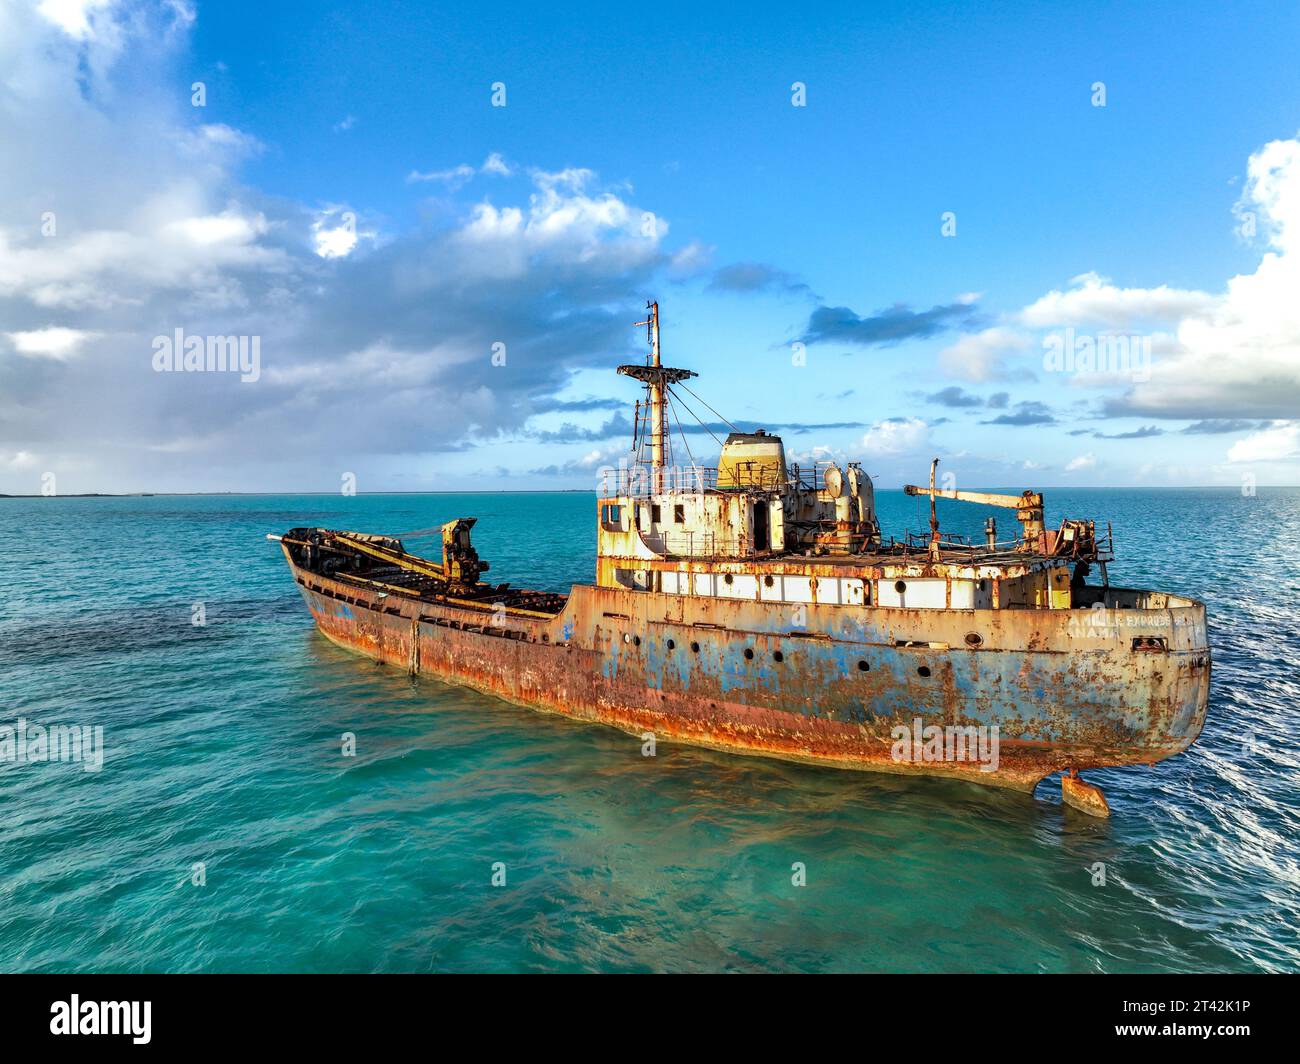 Dieses Schiff aus der sowjetzeit liegt im kristallklaren Wasser von Providenciales und ist ein atemberaubendes Wahrzeichen und Touristenattraktion und ein muss in sozialen Medien. Stockfoto